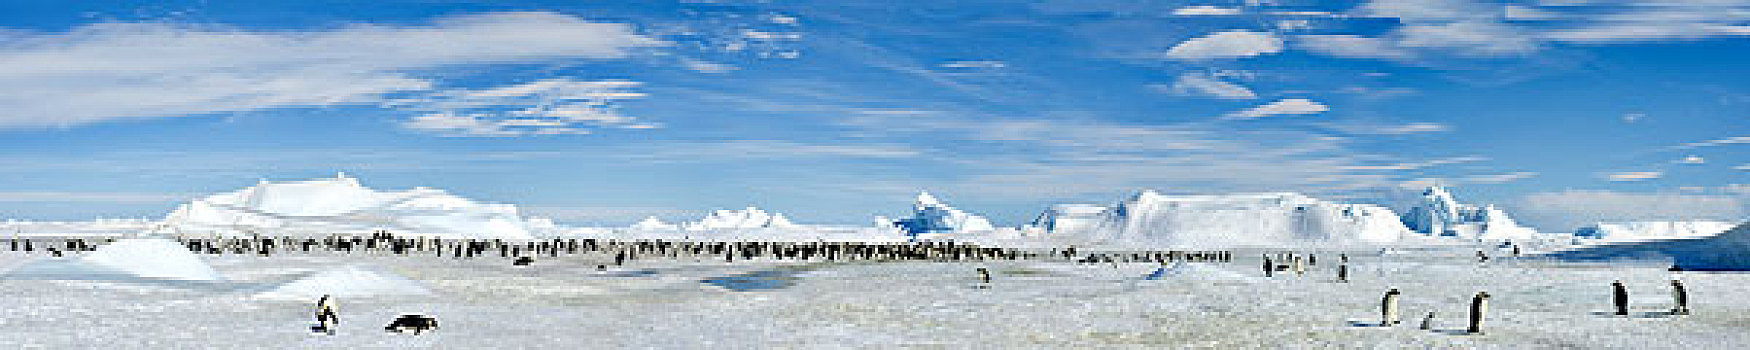 南极,威德尔海,雪丘岛,全景,照片,帝企鹅,冰山